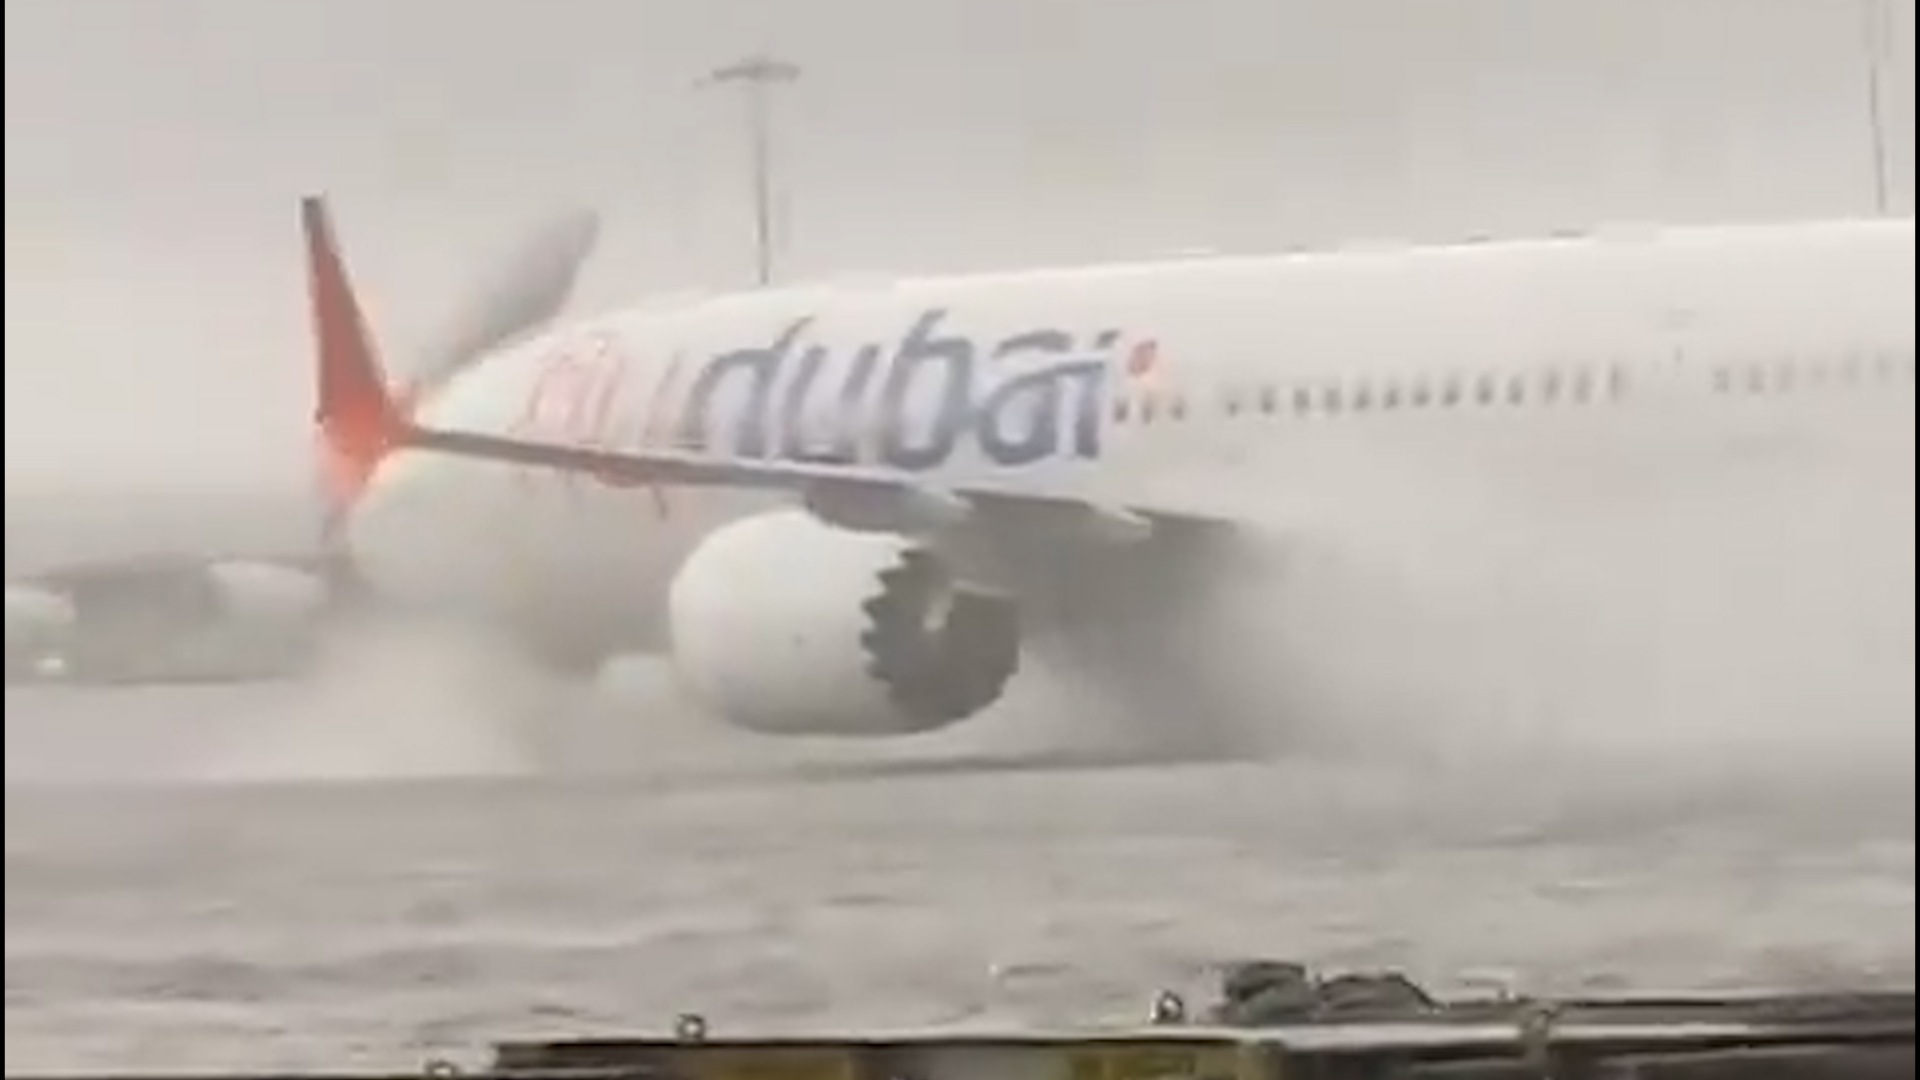 L'aéroport de Dubaï sous l'eau, image forte des inondations records dans le golfe Persique